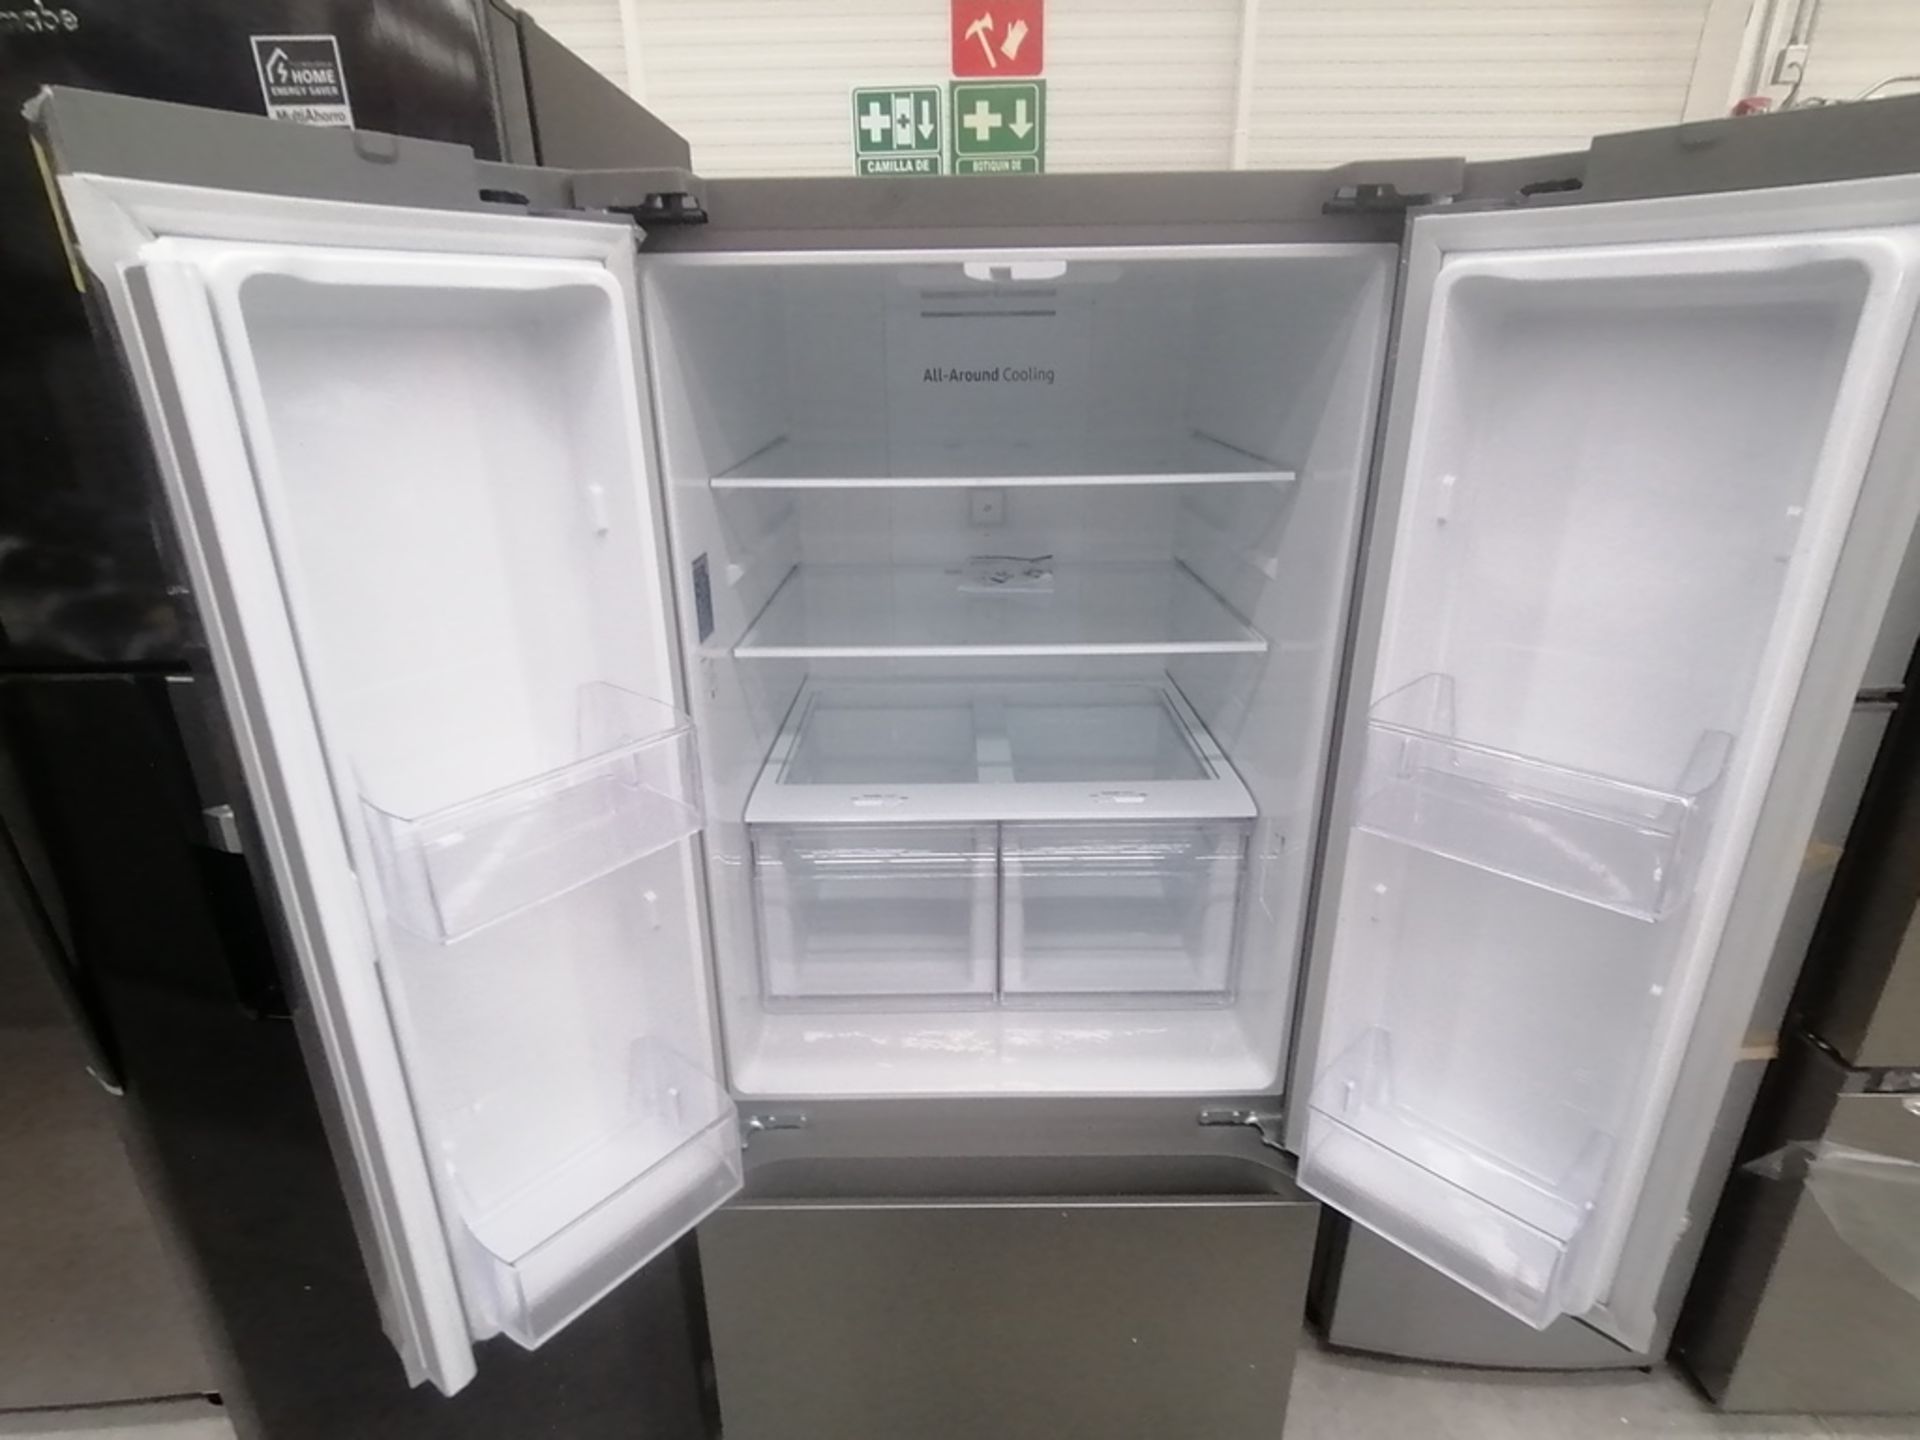 Lote de 2 refrigeradores incluye: 1 Refrigerador, Marca Samsung, Modelo RT22A401059, Serie 8BA84BBR - Image 7 of 15